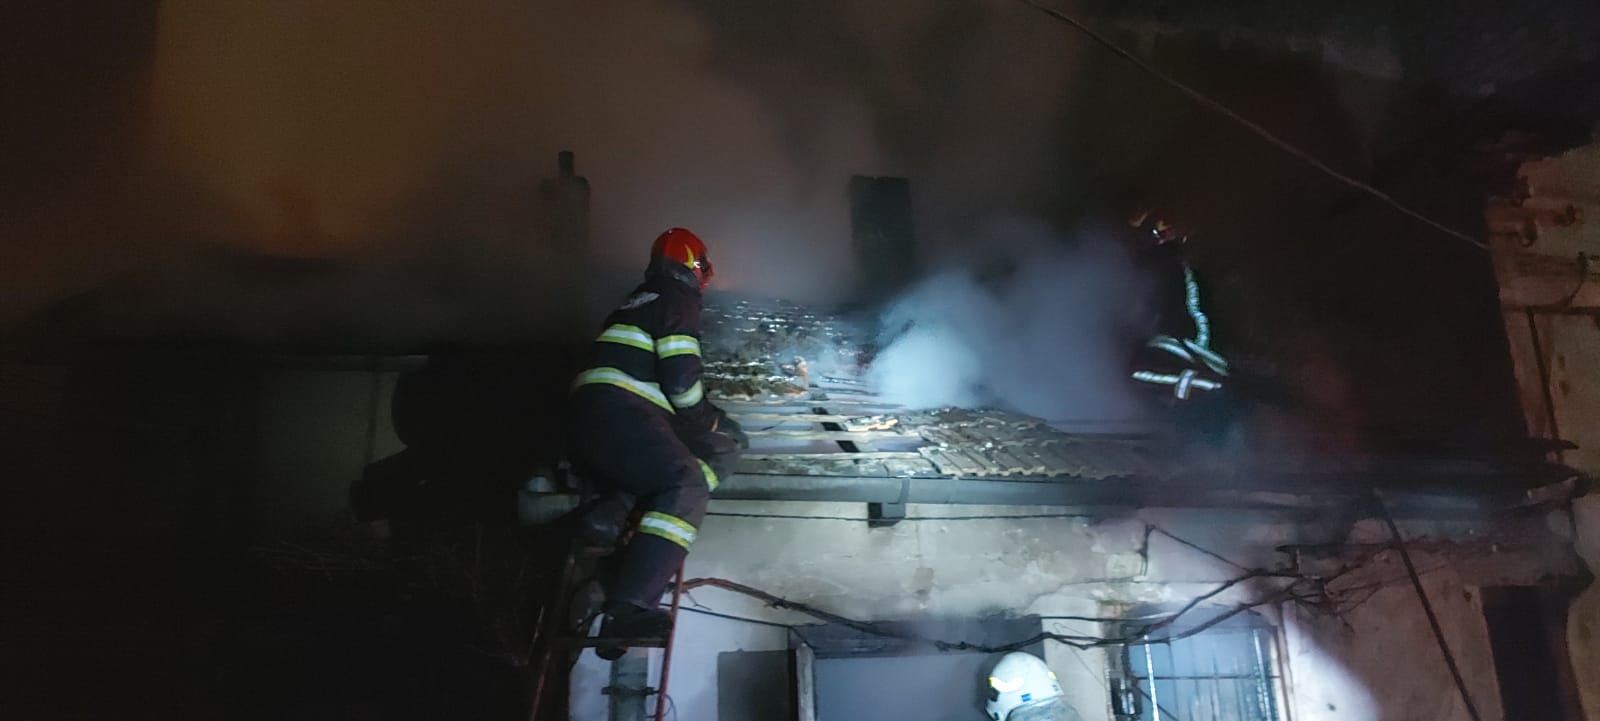 Incendiu la o casă din Cluj-Napoca! Totul ar fi pornit de la o lumânare nesupravegheată. FOTO